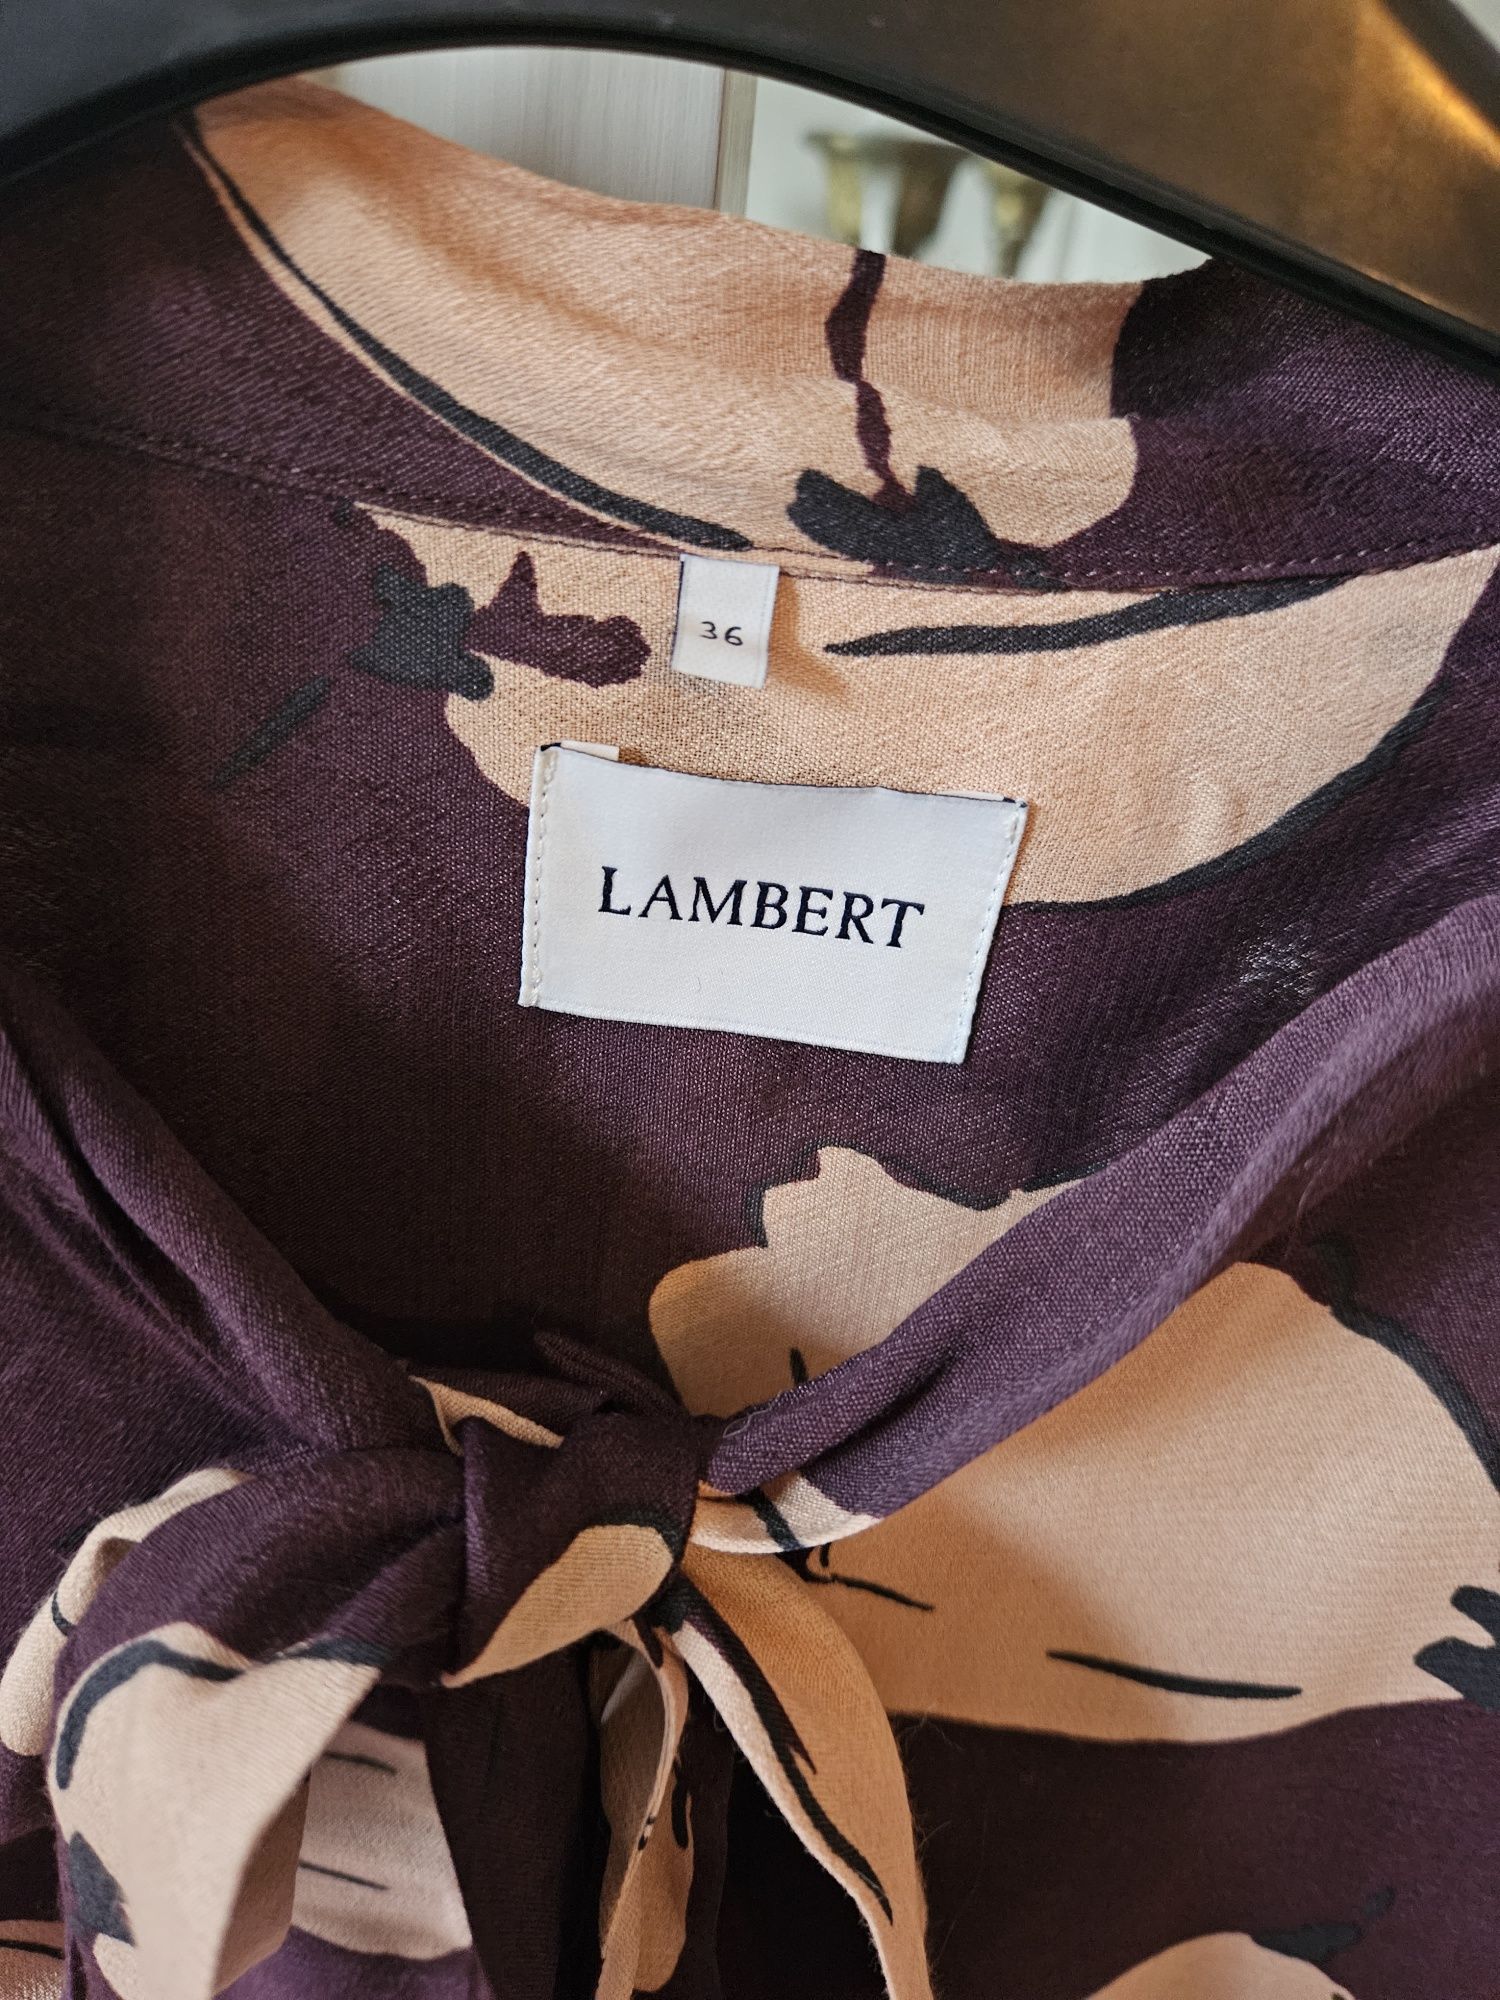 Koszula Lambert, elegancka.